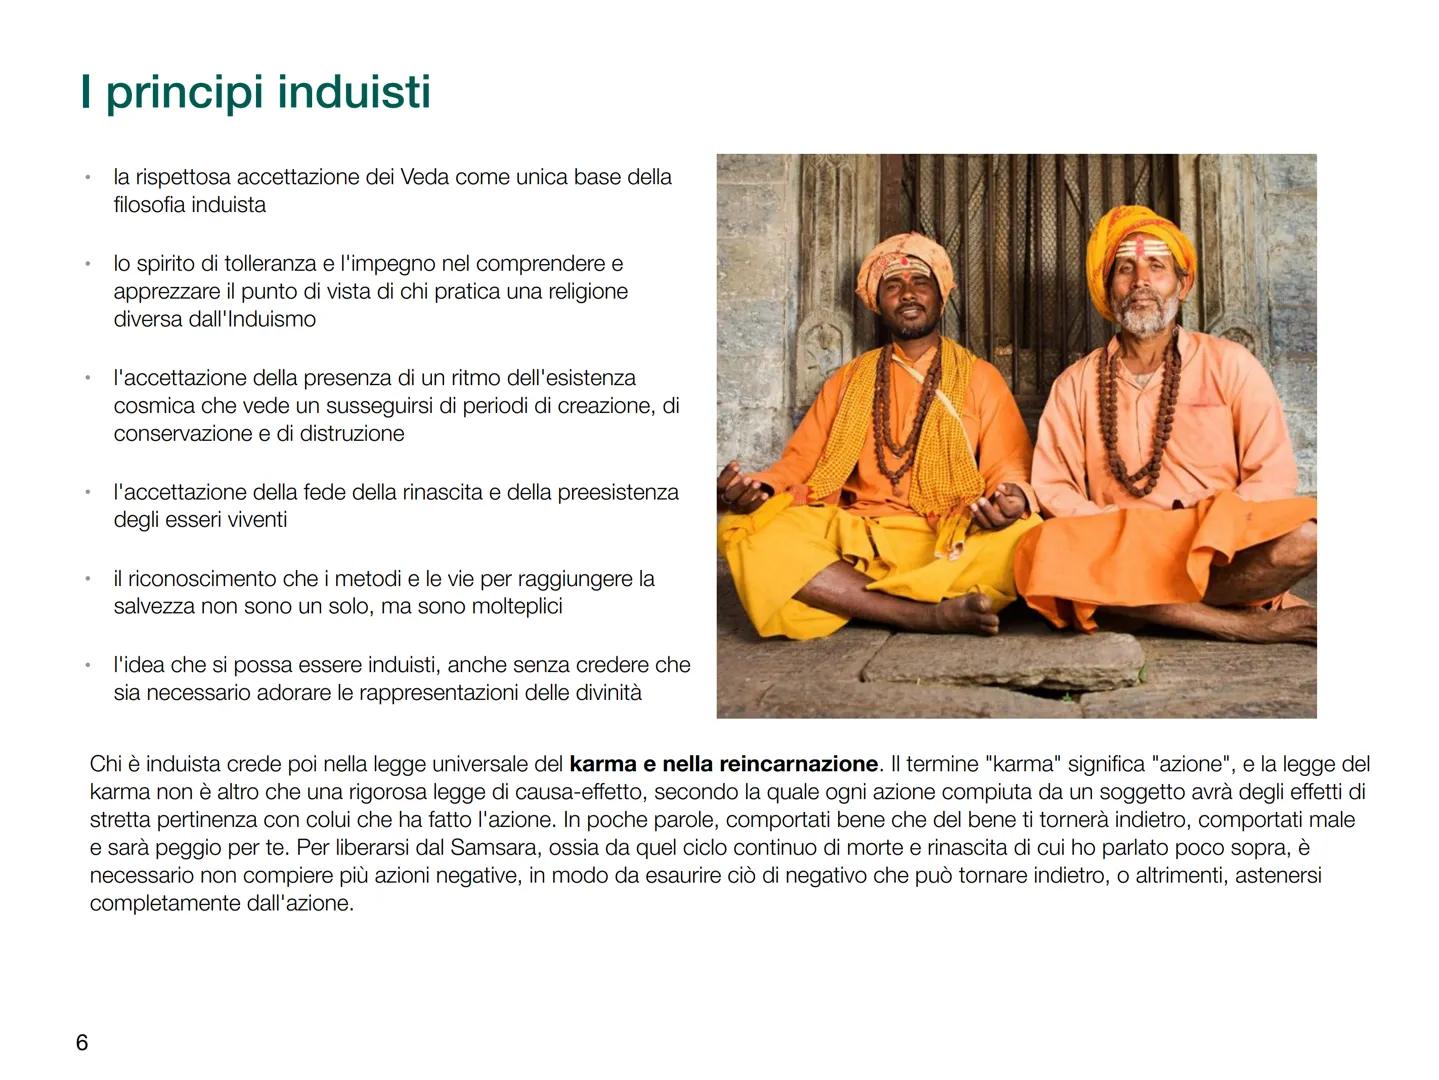 
<p>L'induismo è una religione monoteista con un'unica divinità chiamata Brahman, lo spirito assoluto, che può essere adorato in molte forme